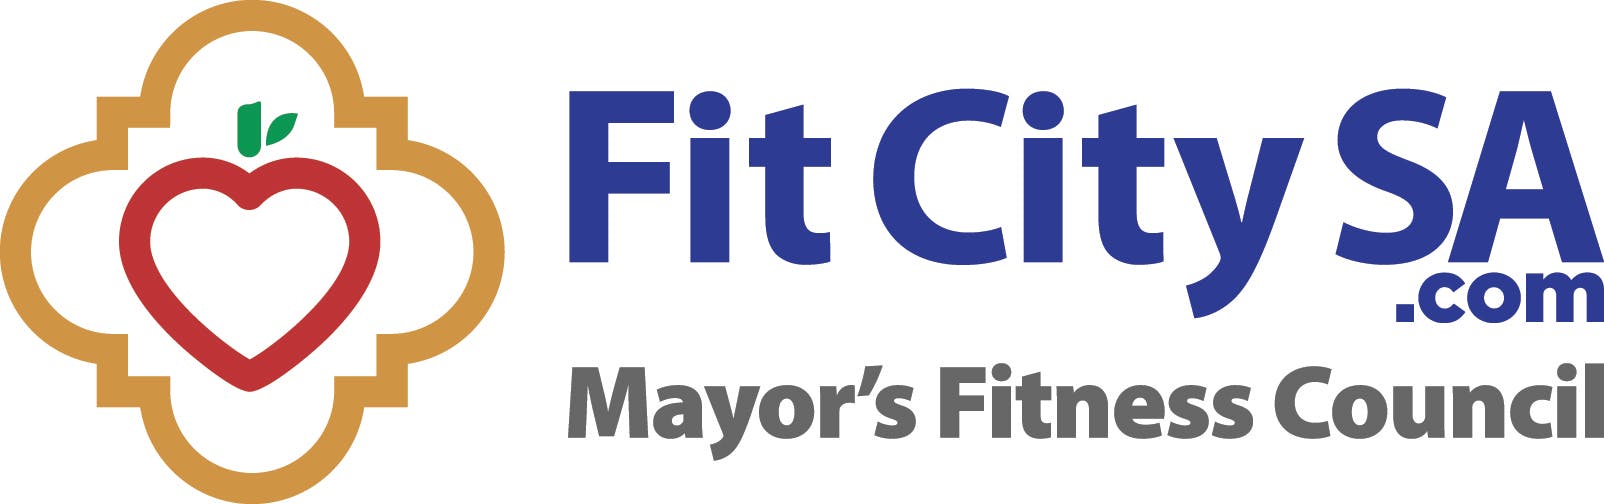 FitCitySA.com Mayor's Fitness Council